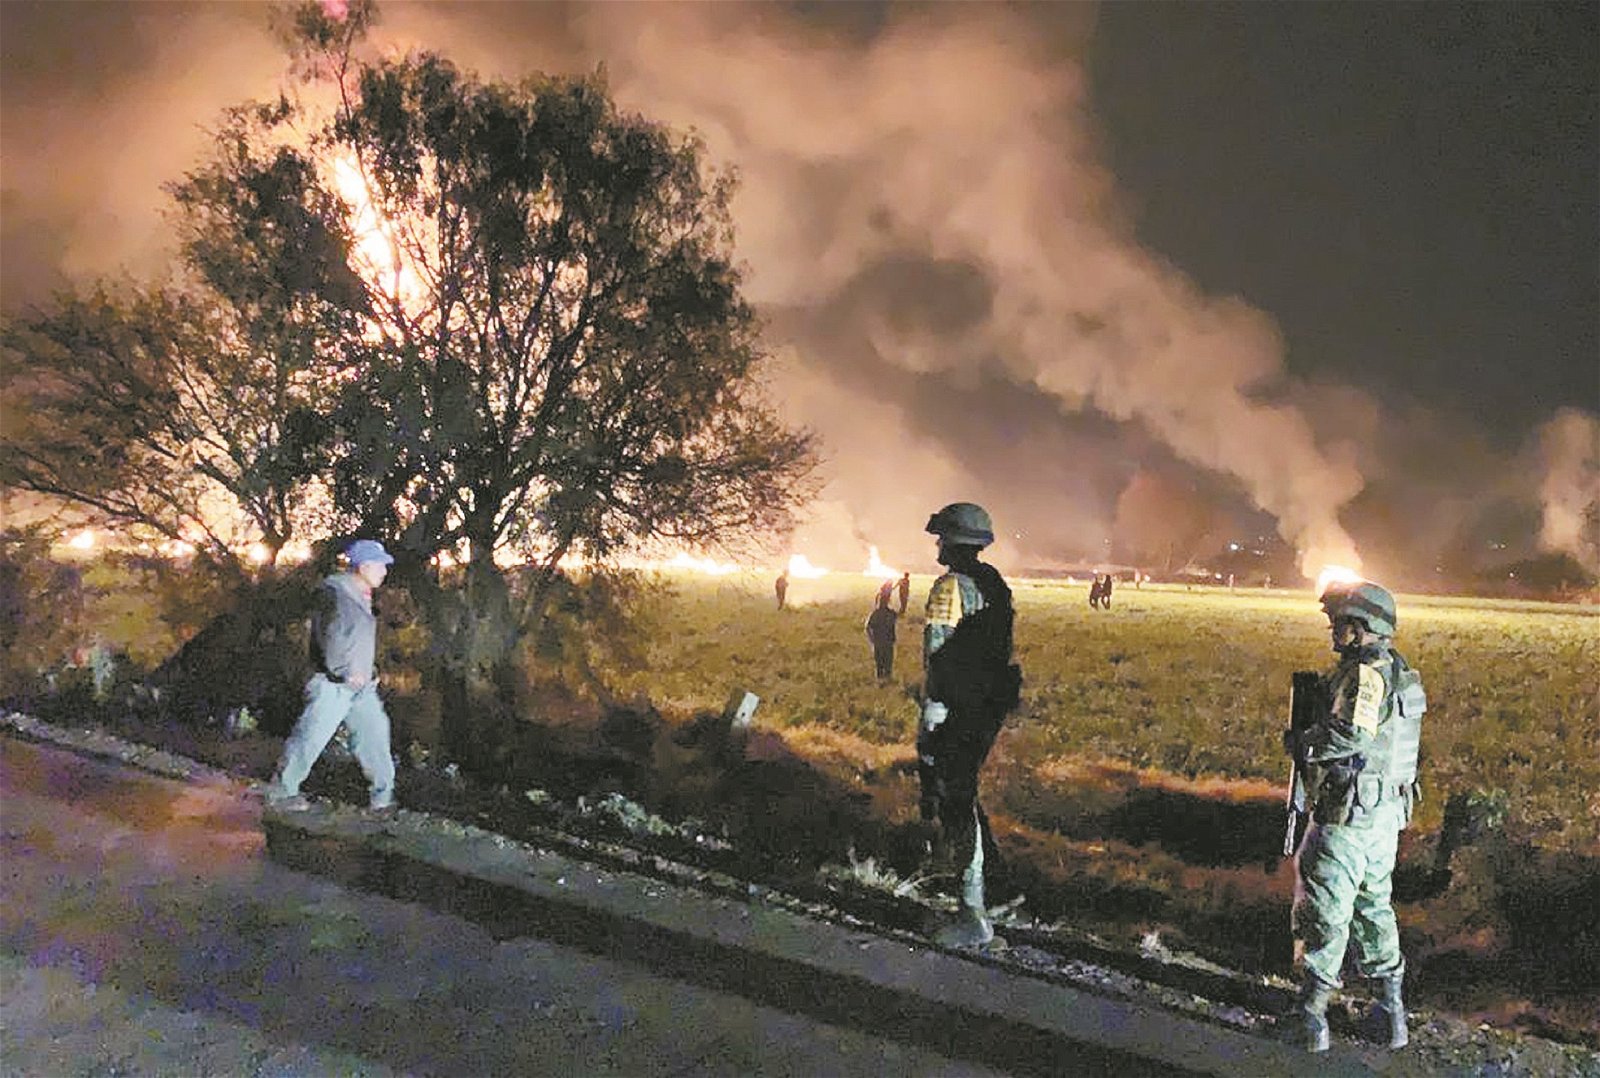 墨西哥国防部长发布的照片显示，火光冲天的爆炸现场已驻守了不少士兵，并进行著救援及维持秩序的工作。总统奥夫拉多尔已下令，要全力救灾。